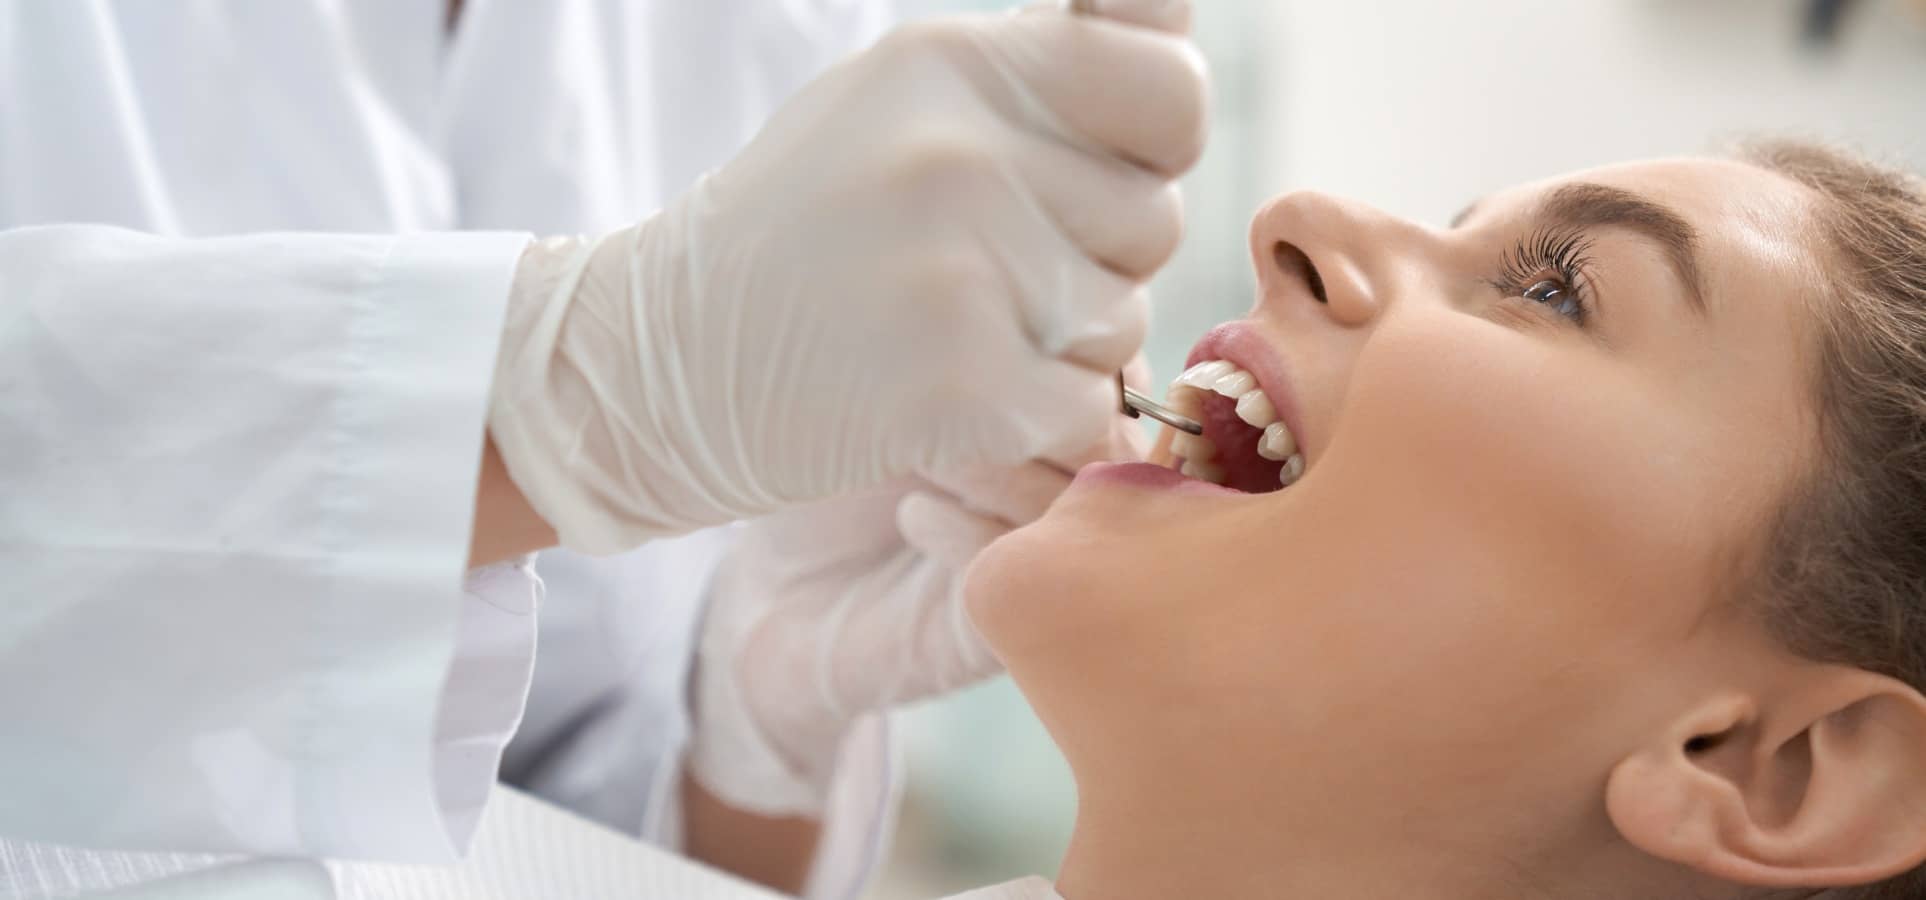 Edentation : comment remplacer une dent manquante ? | Dr Temstet| Paris